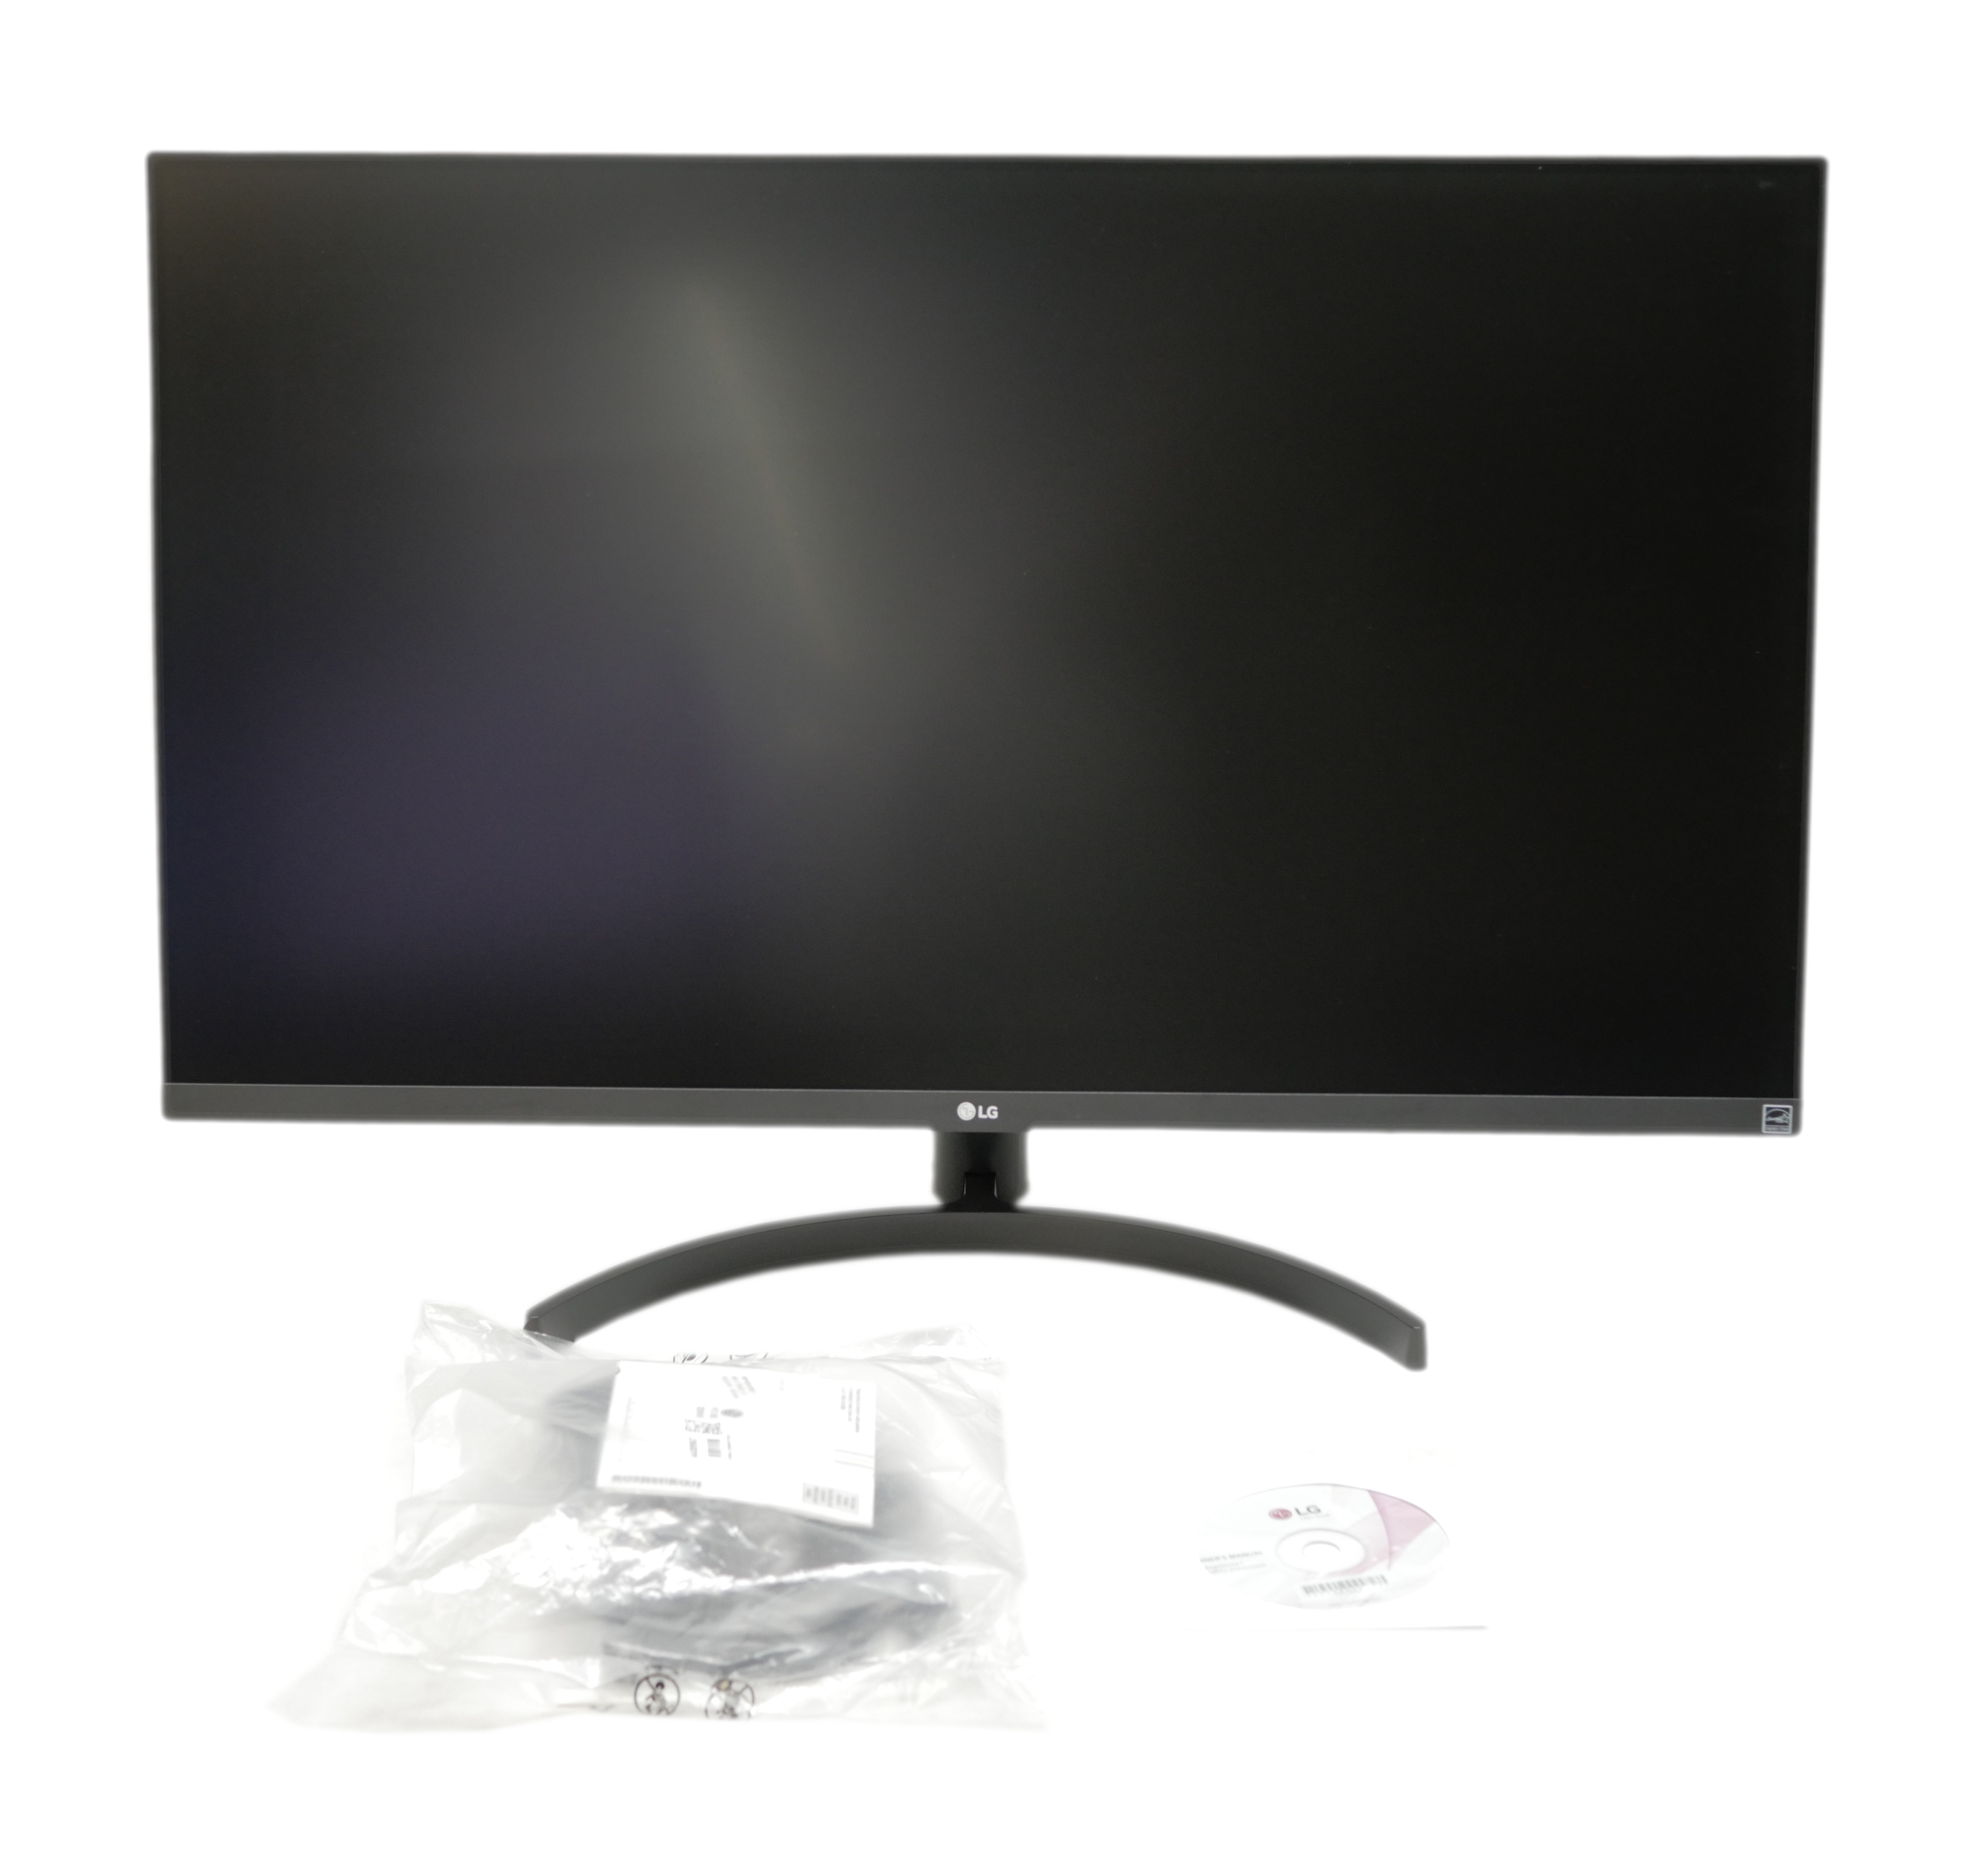 LG VA Monitor 32" UHD 4K HDR10 LED LCD DCI-P3 90% FreeSync Tilt 32BN50U-B - Click Image to Close